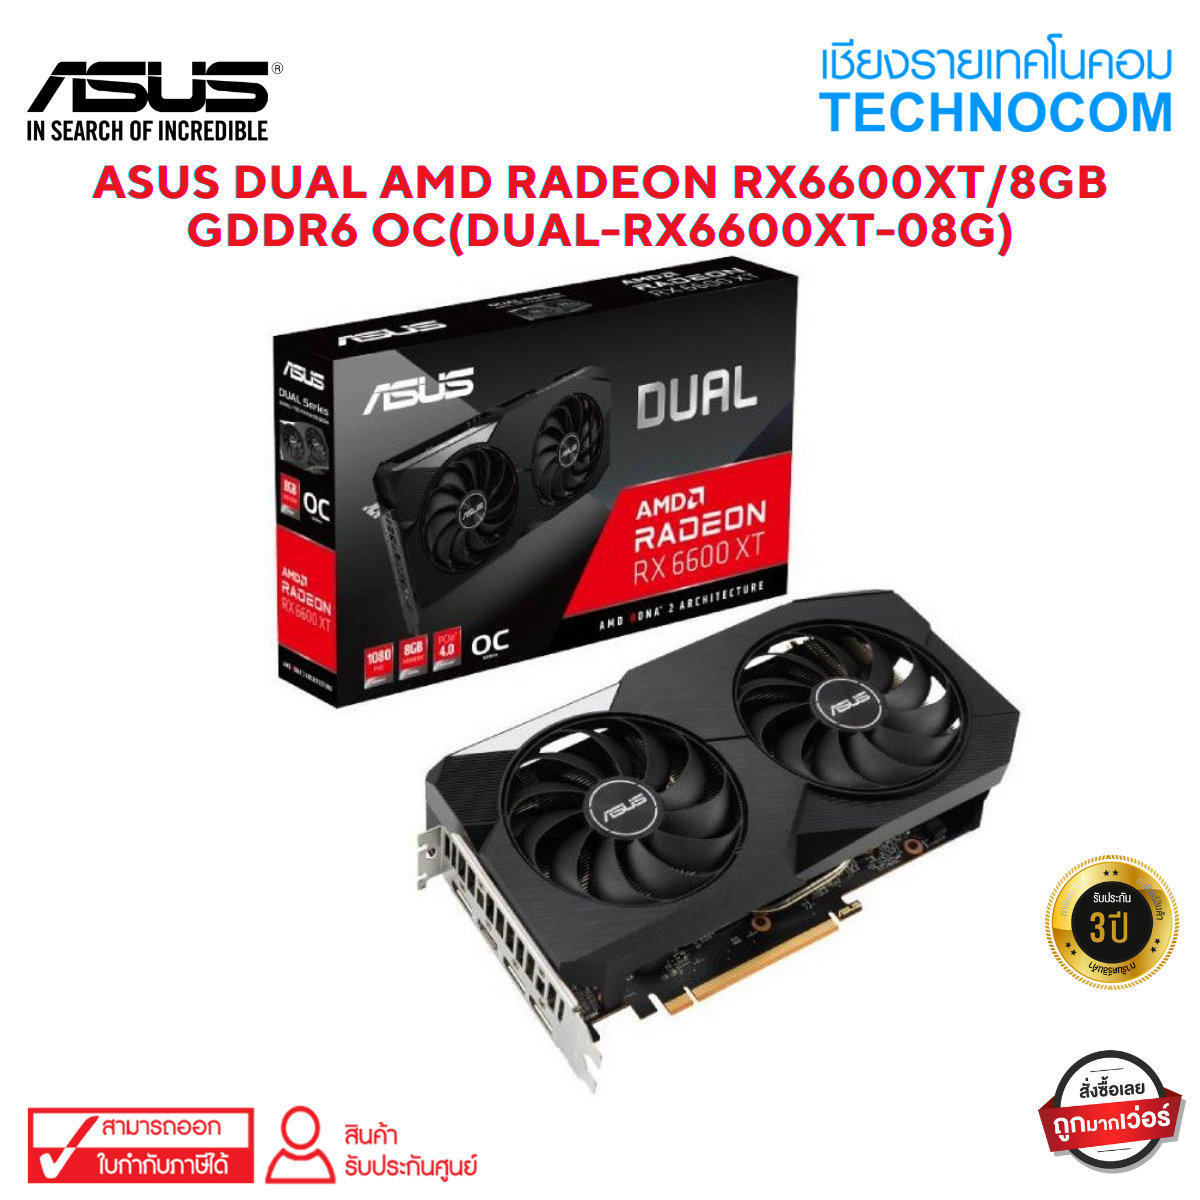 ASUS DUAL AMD RADEON RX6600XT/8GB GDDR6 OC(DUAL-RX6600XT-08G)